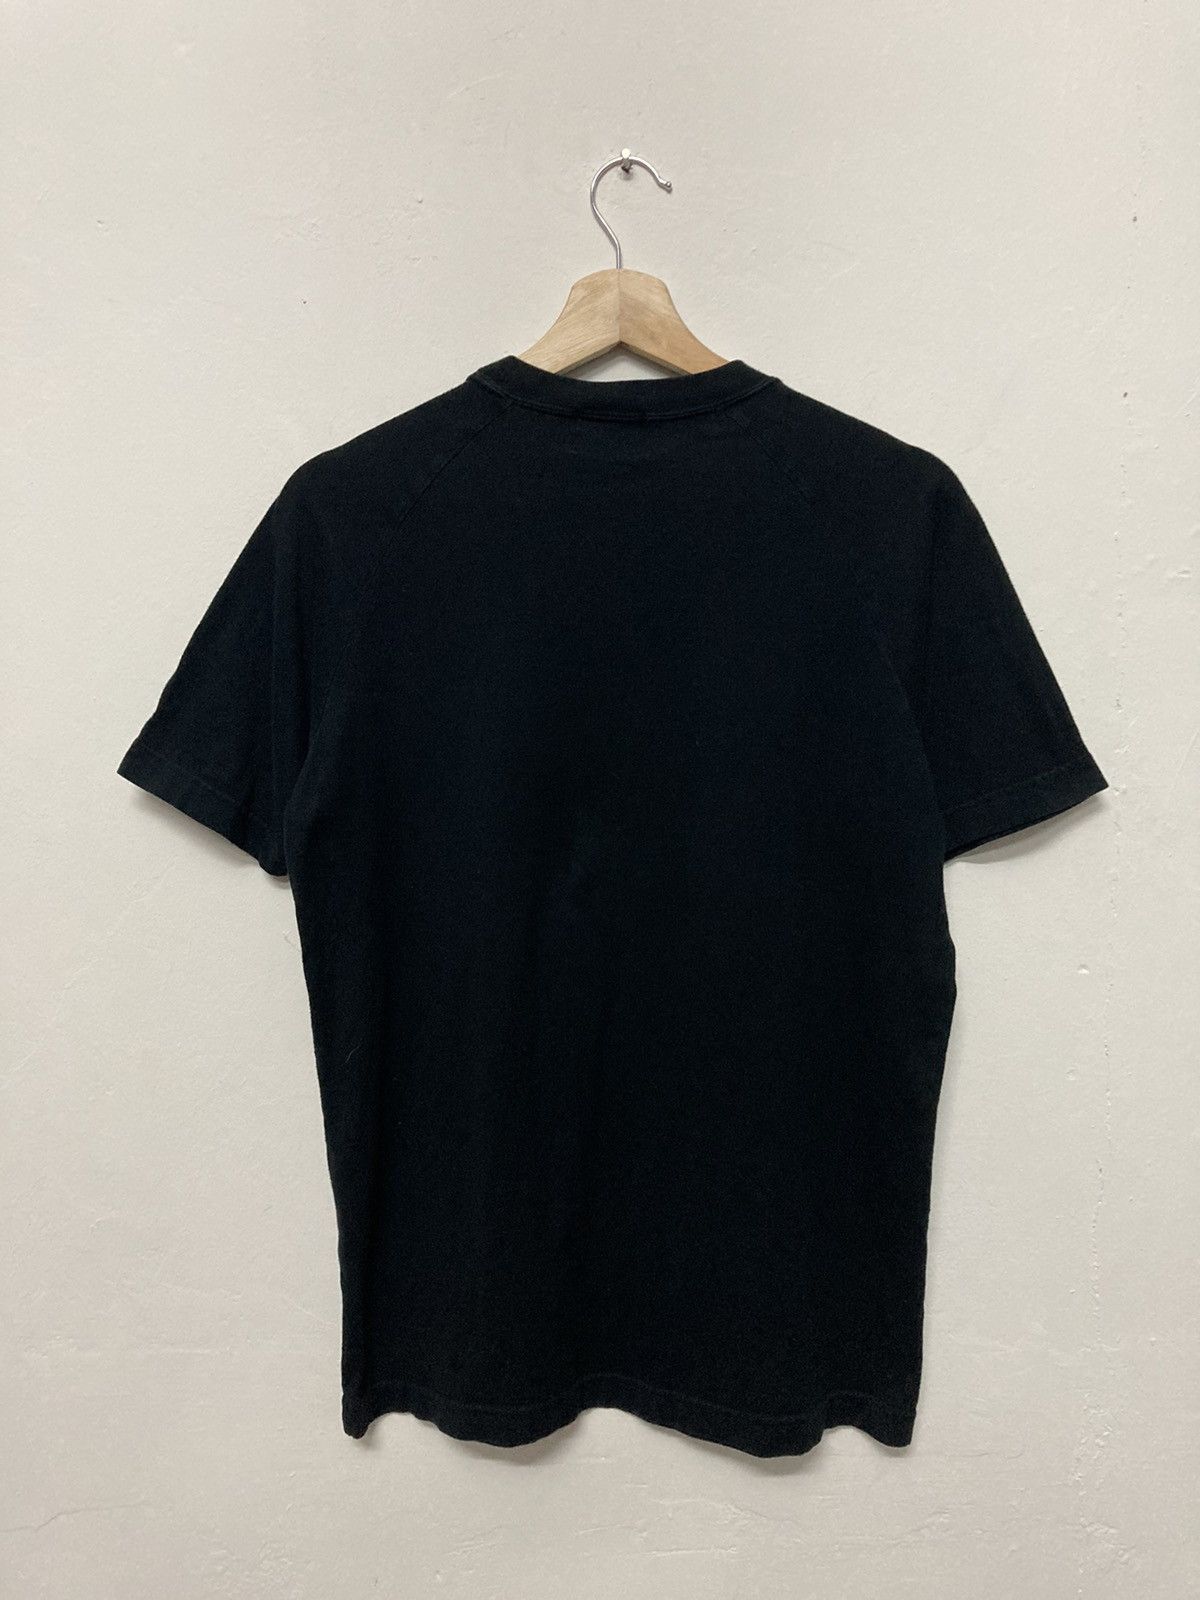 A.A.R Yohji Yamamoto x Durban Black Plain Shirt - 2